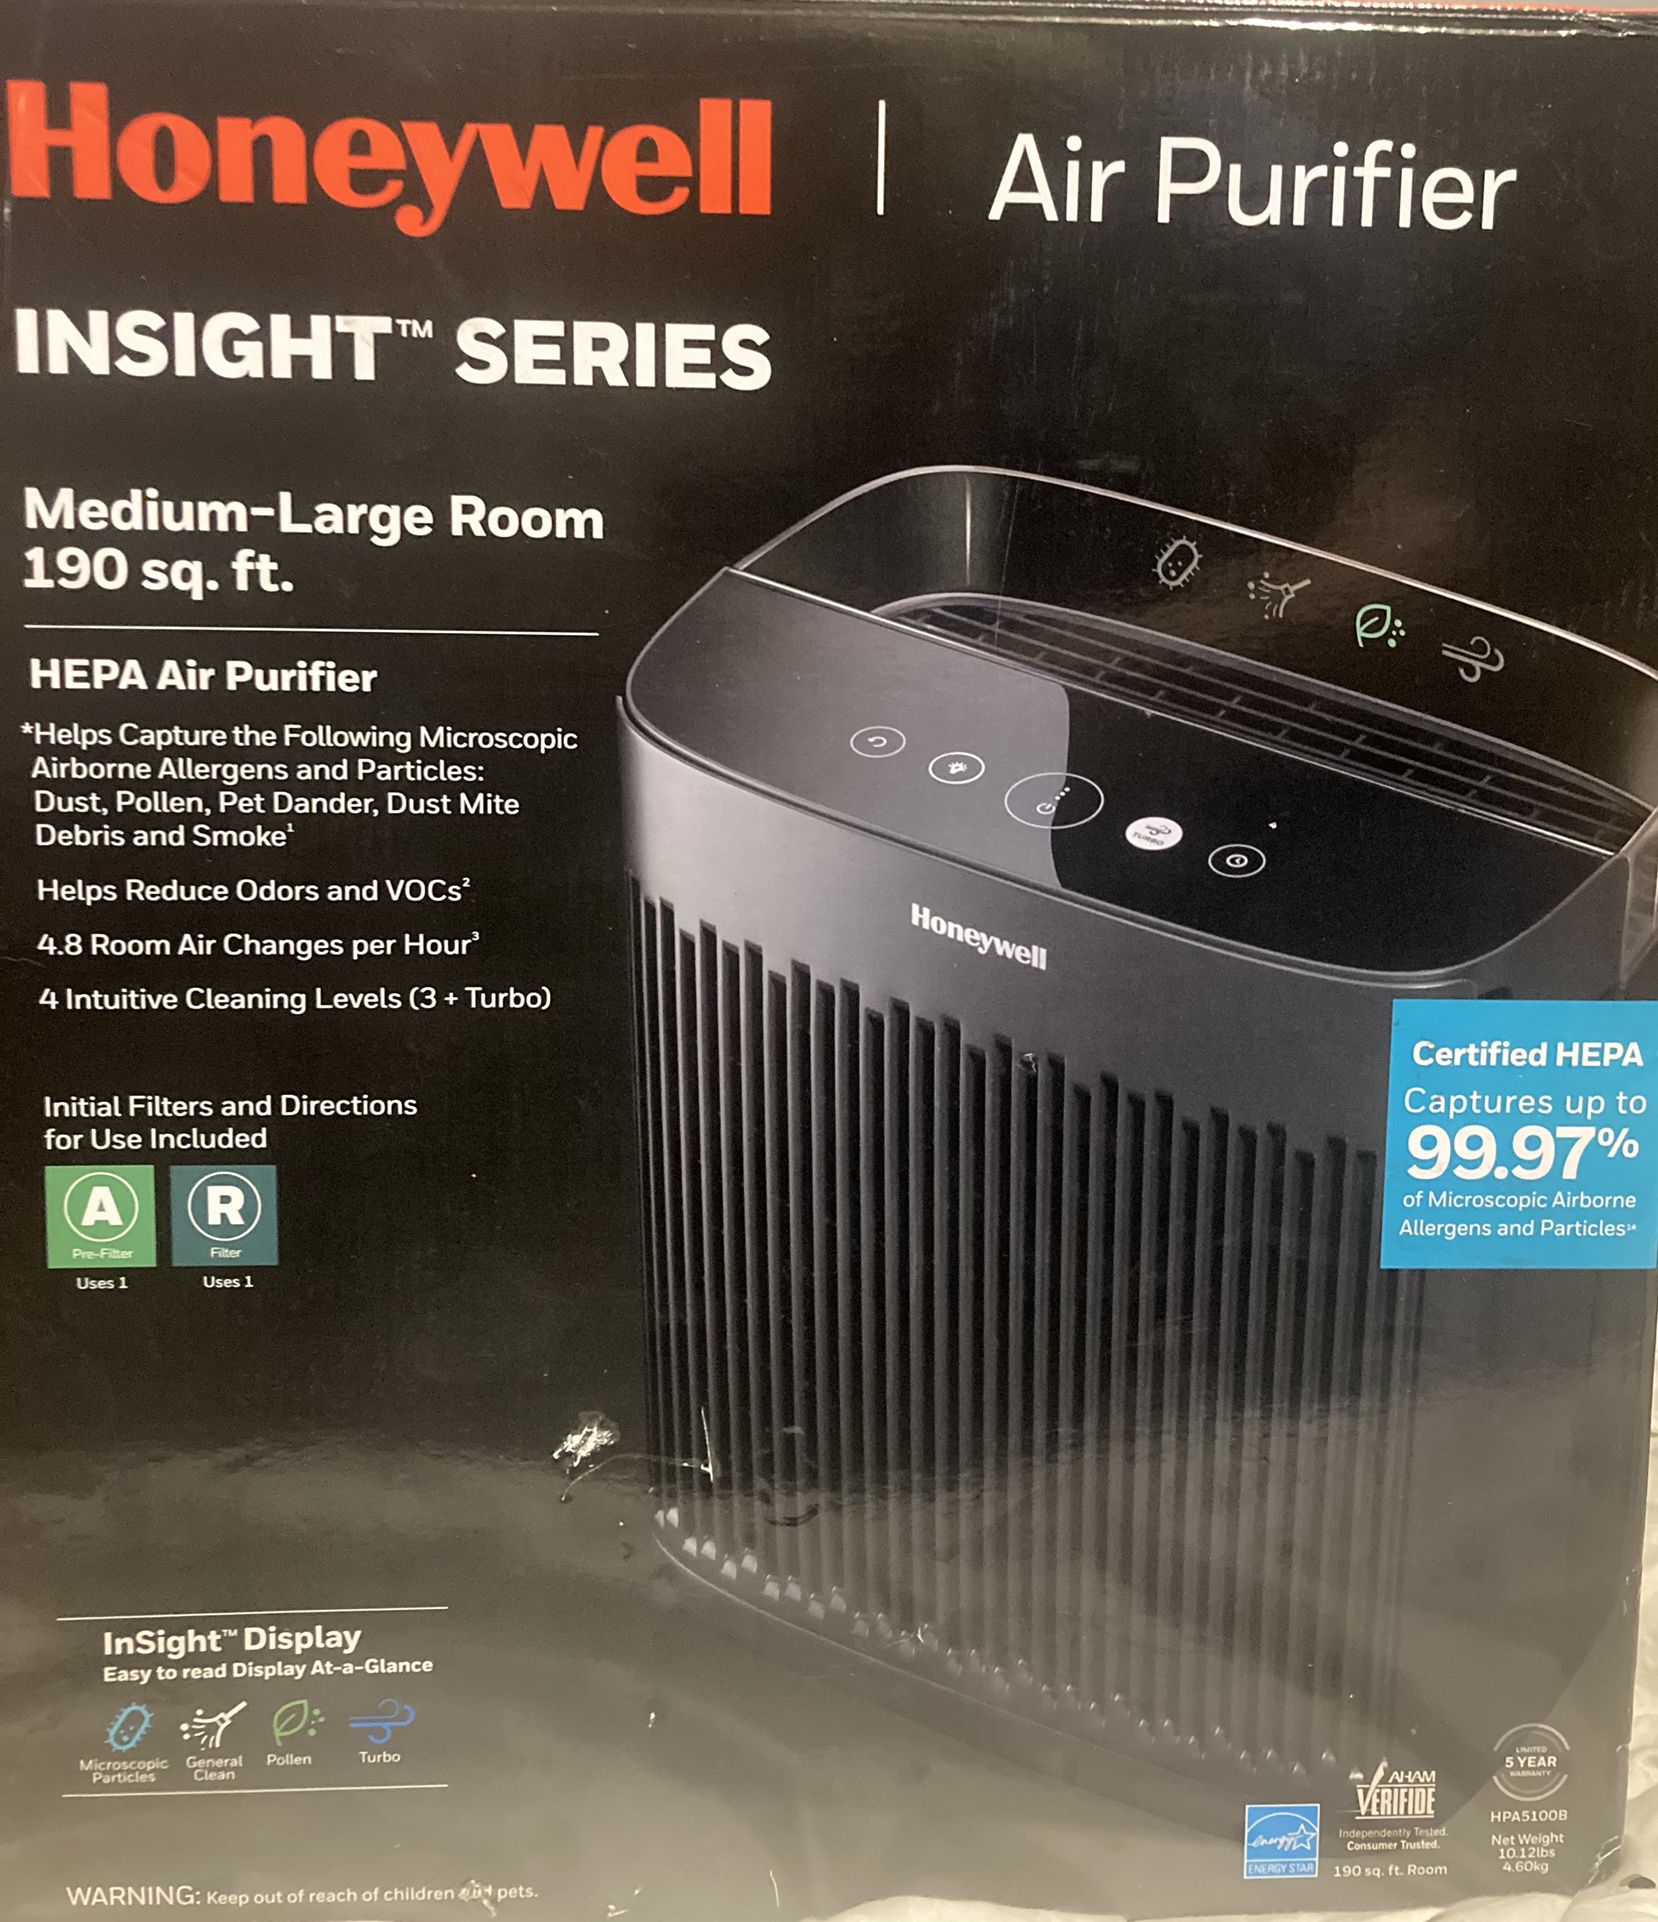 Honeywell Insight Series Air Purifier